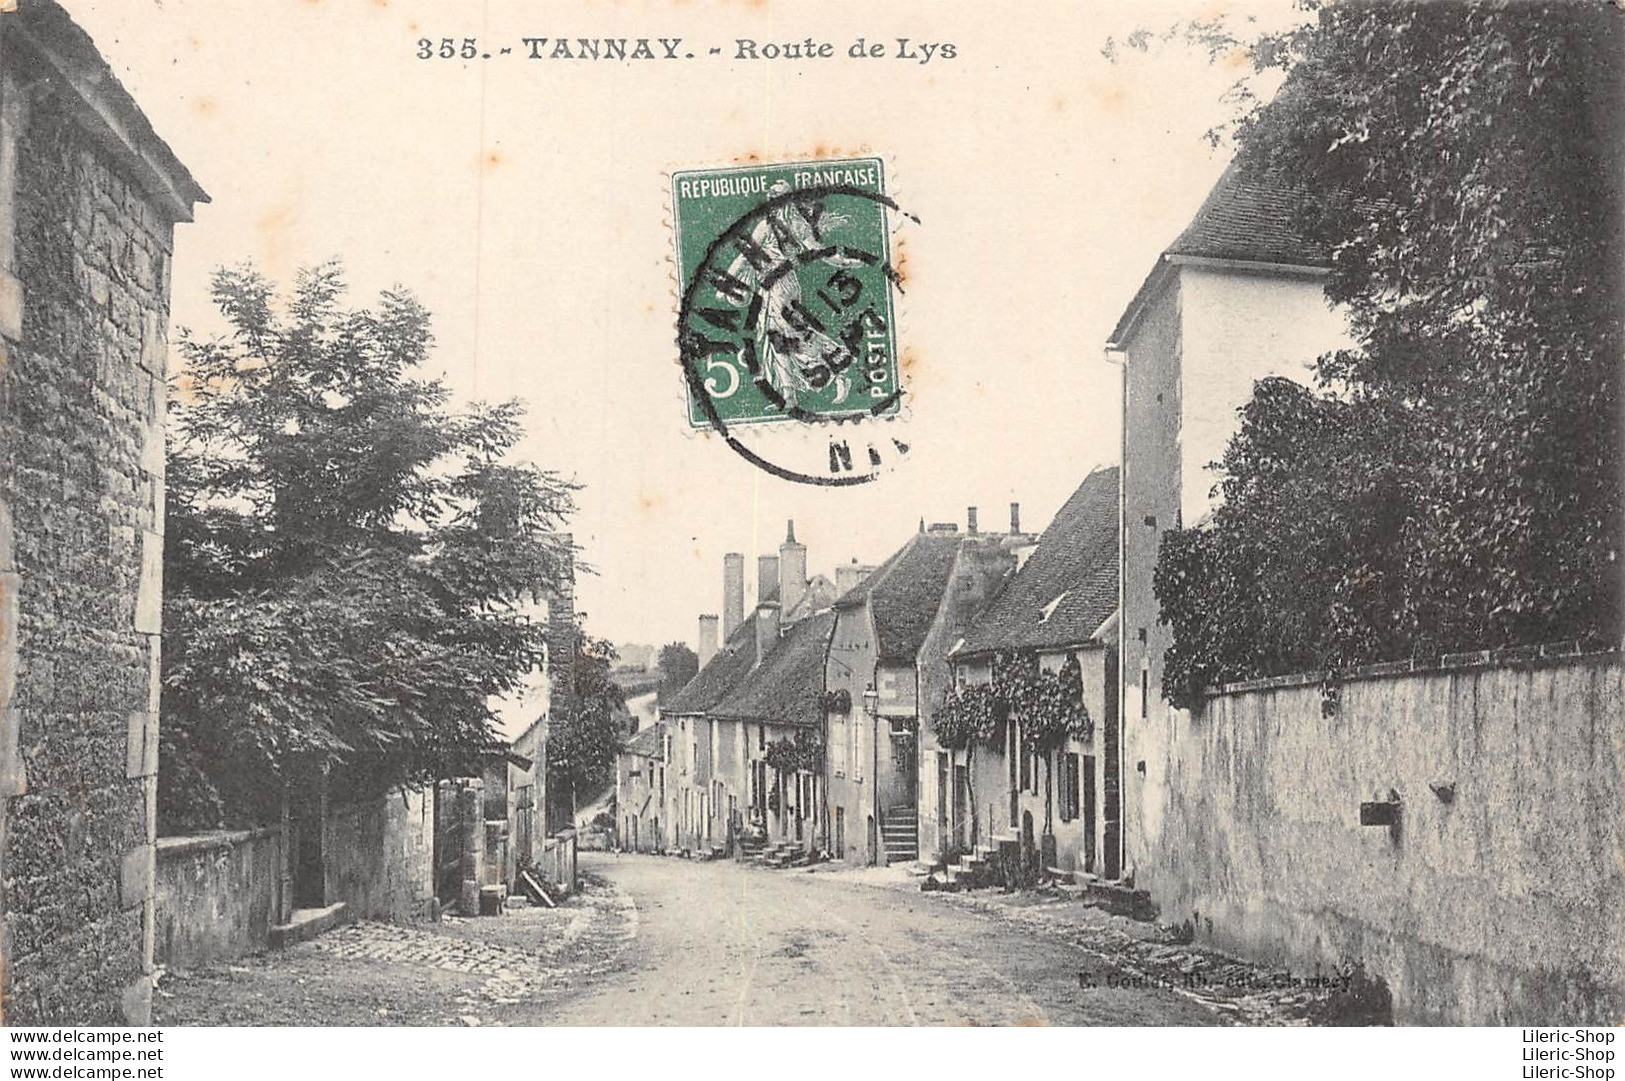 TANNAY (58) - Route De Lys - E. Goulet, Libraire-Éditeur à Clamecy - Cpa - Tannay